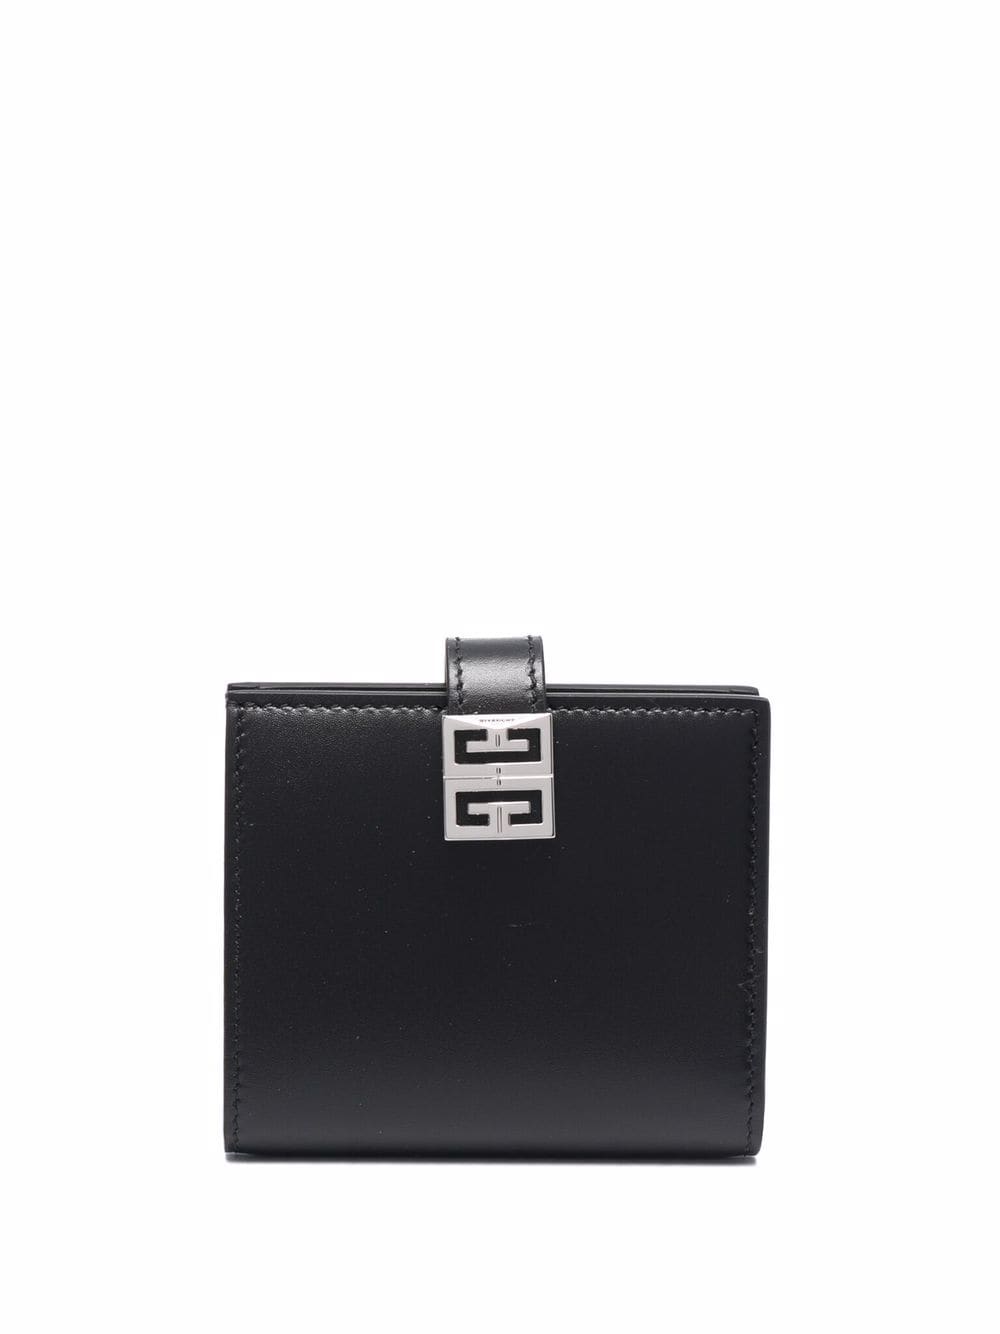 фото Givenchy кошелек с логотипом 4g